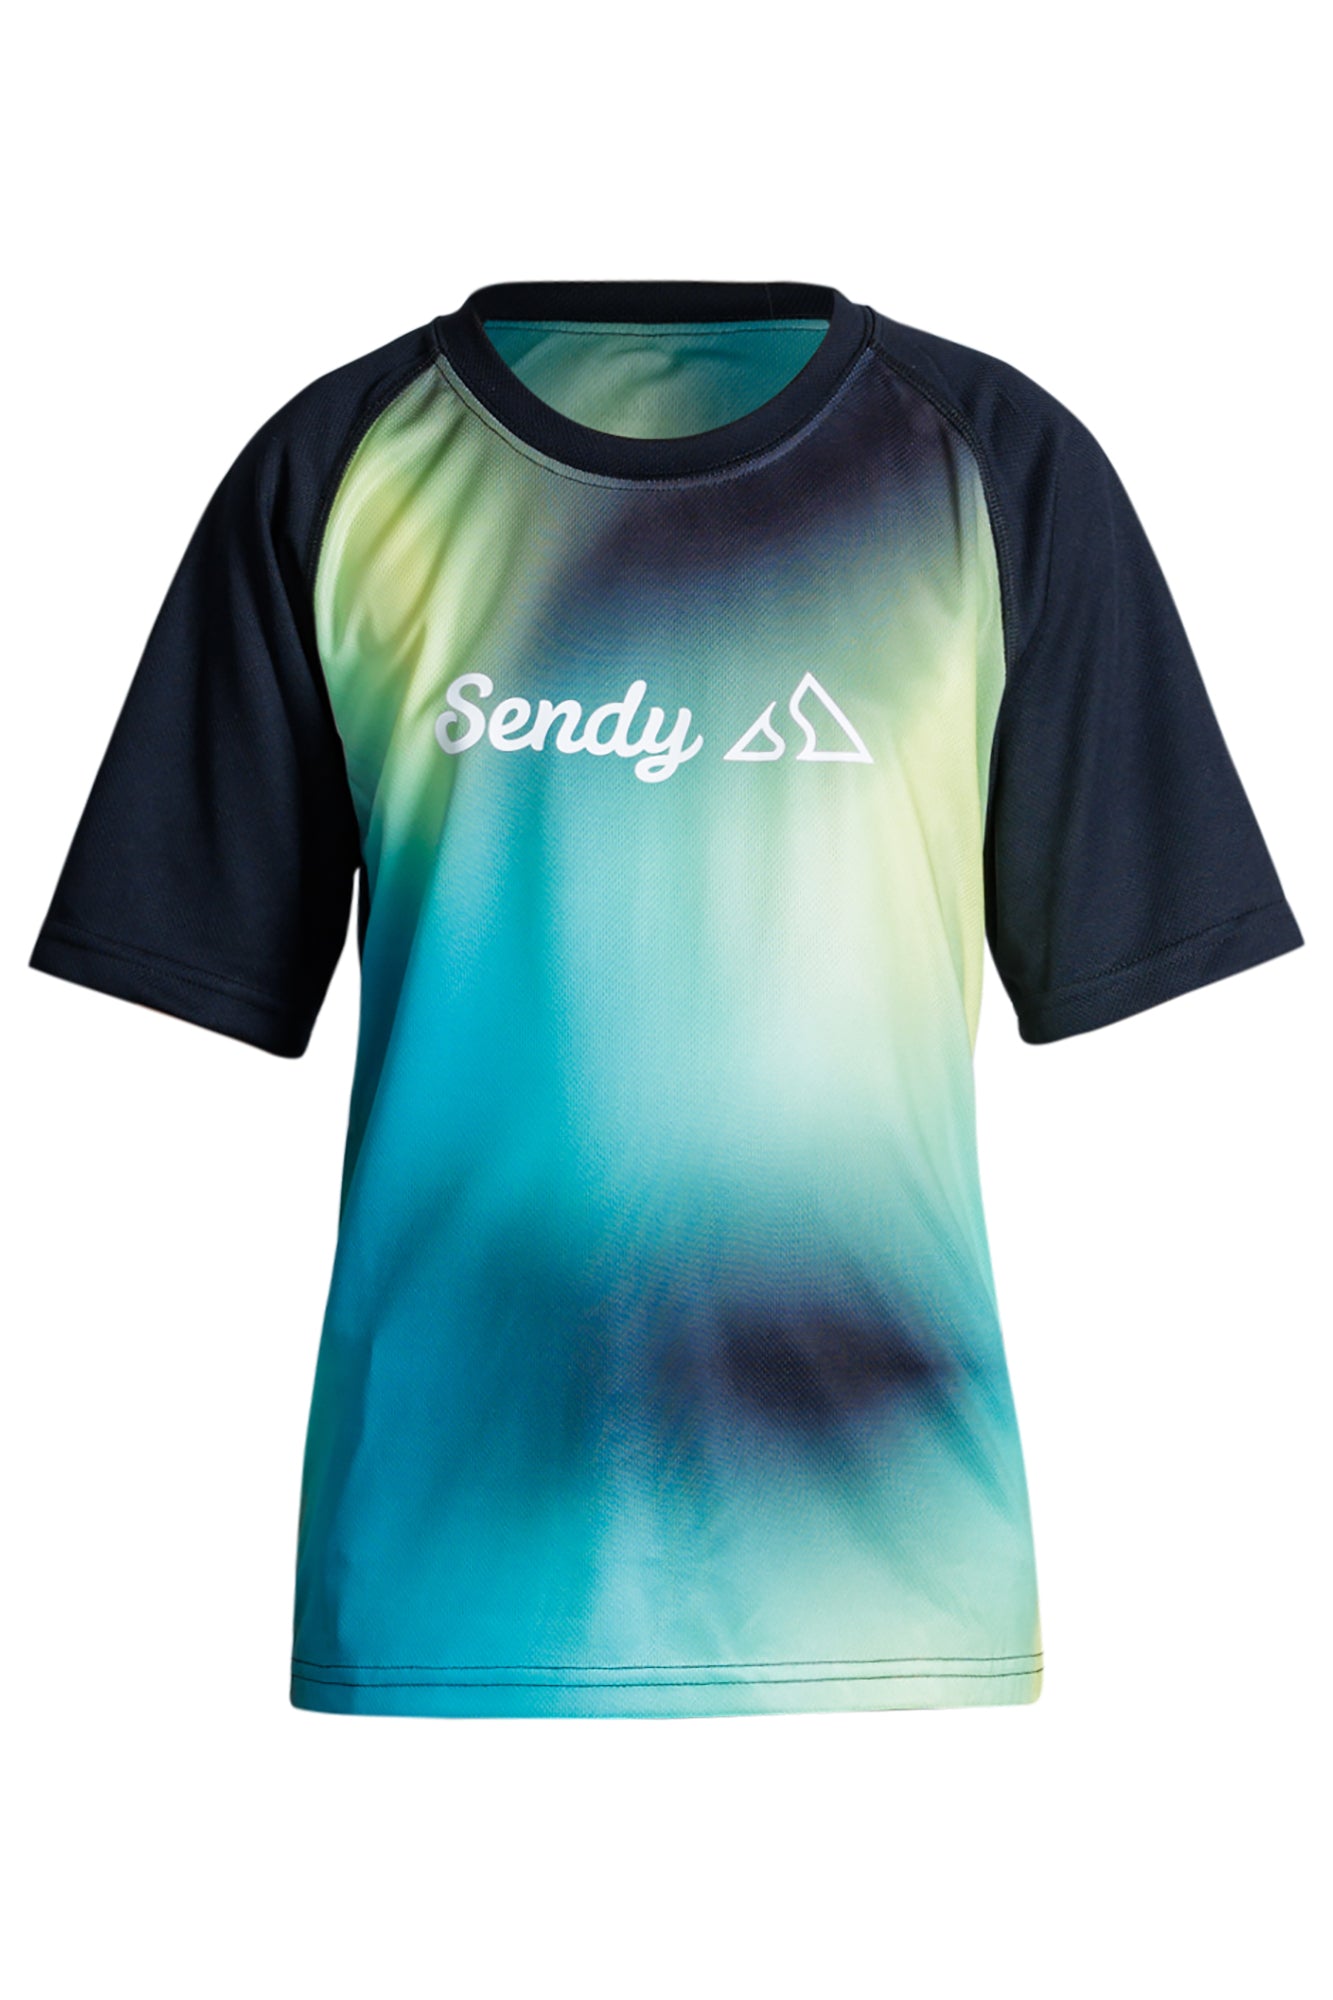 Send It Kids Short Sleeved MTB Jersey | Swirl